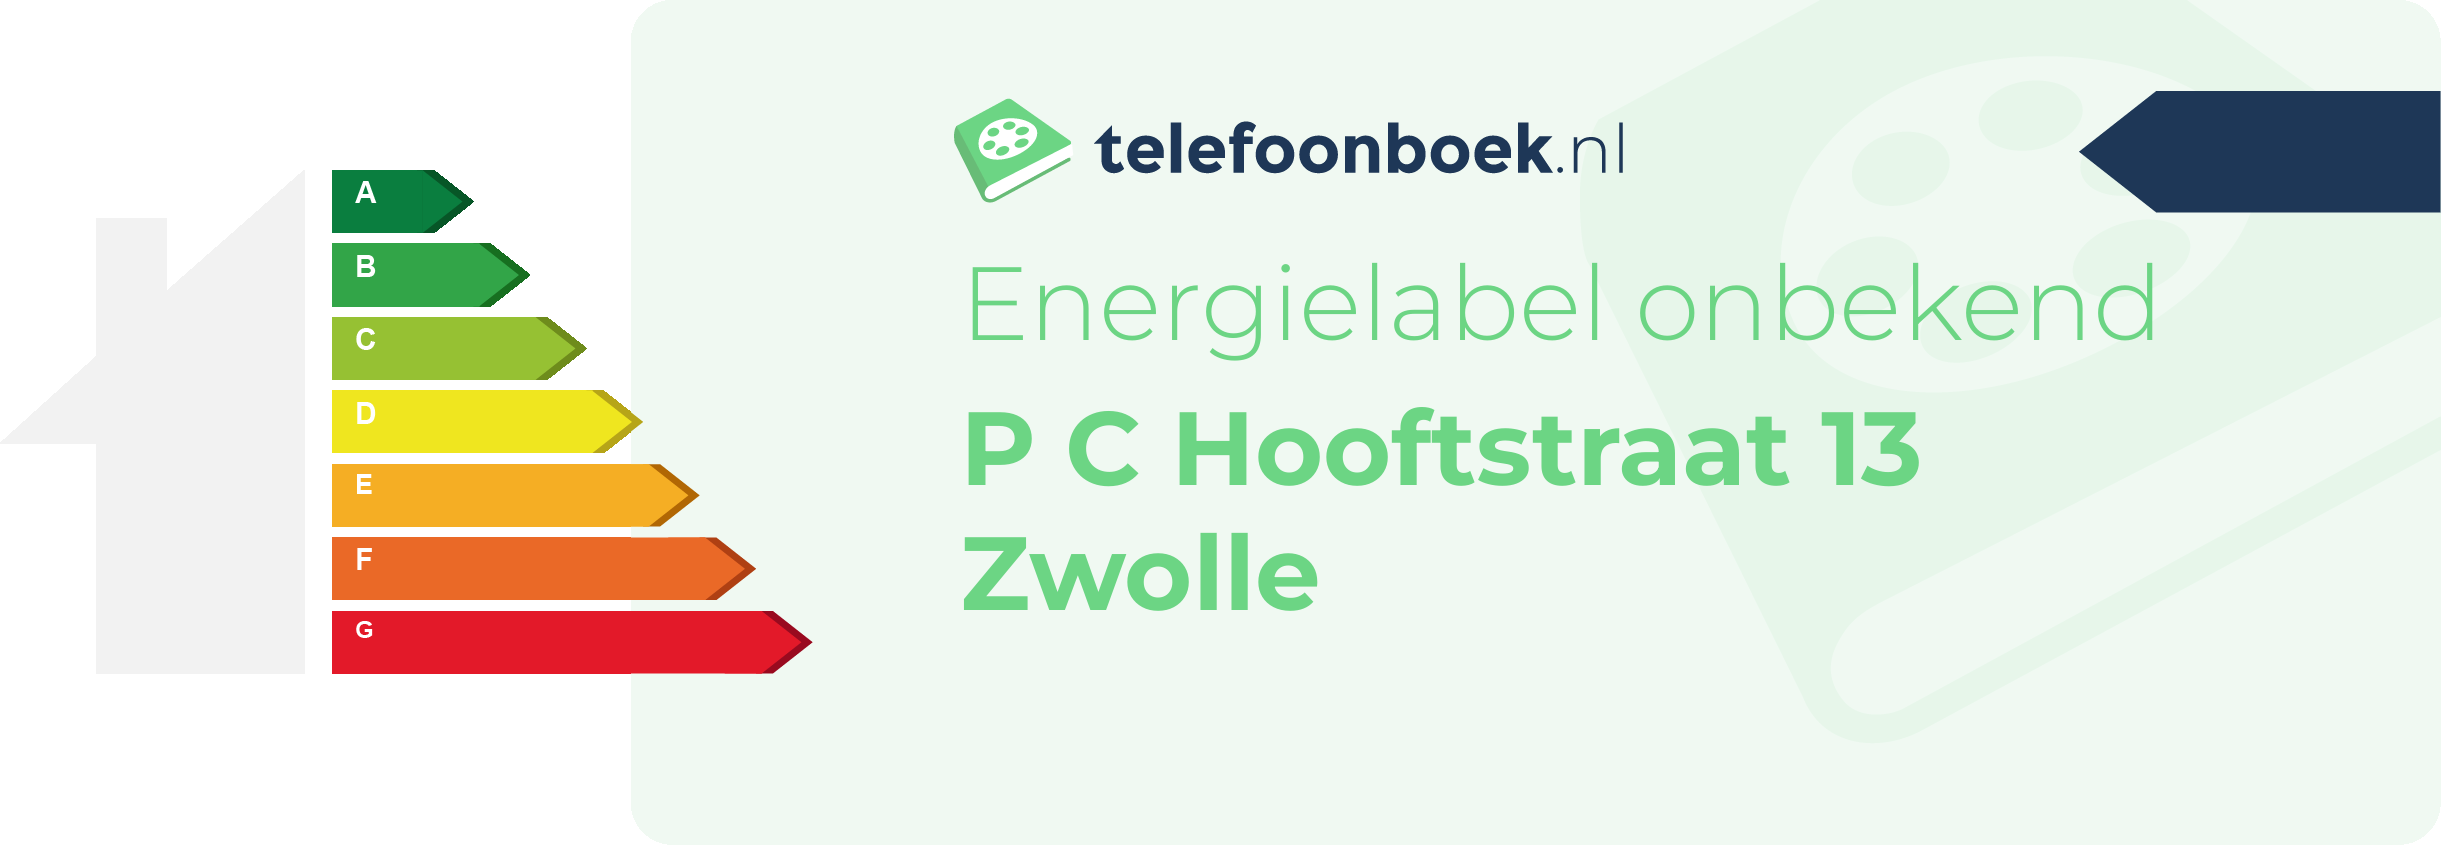 Energielabel P C Hooftstraat 13 Zwolle